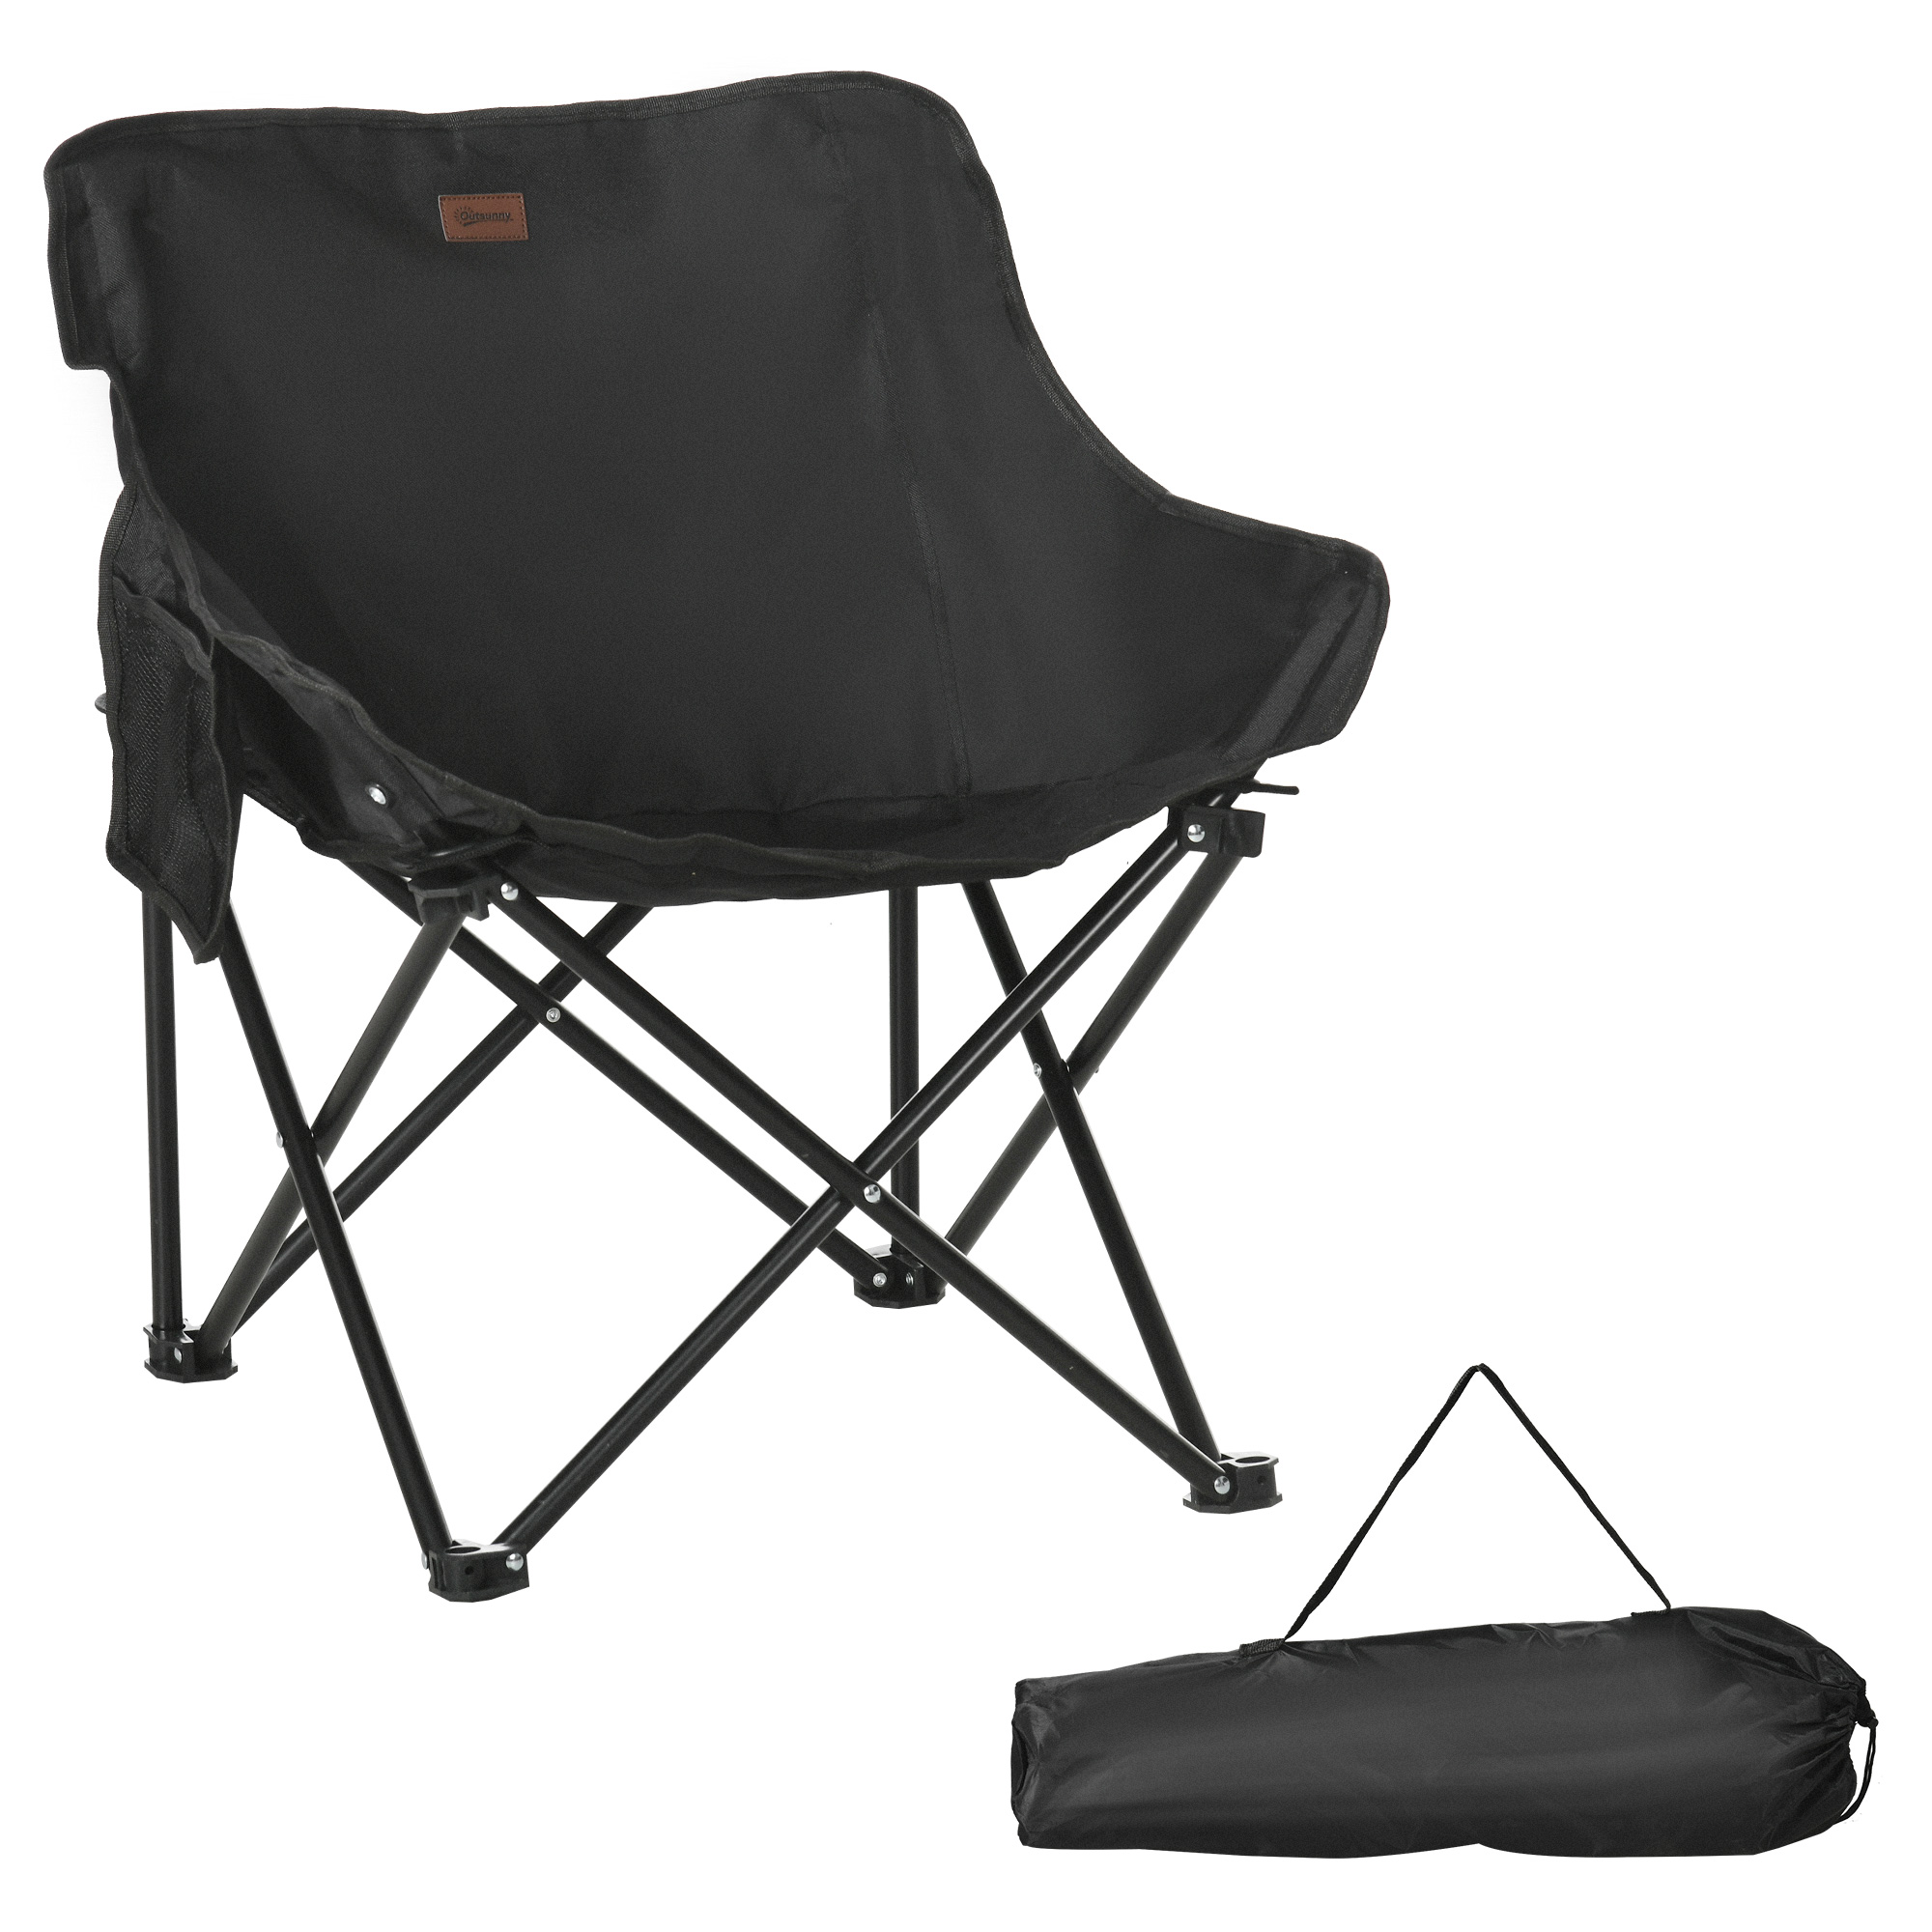 outsunny chaise de camping chaise pliante avec sac de transport et pochette latÃ©rale compact ultra lÃ©gÃ¨re noir 61l x 54p x 66h cm aosom france